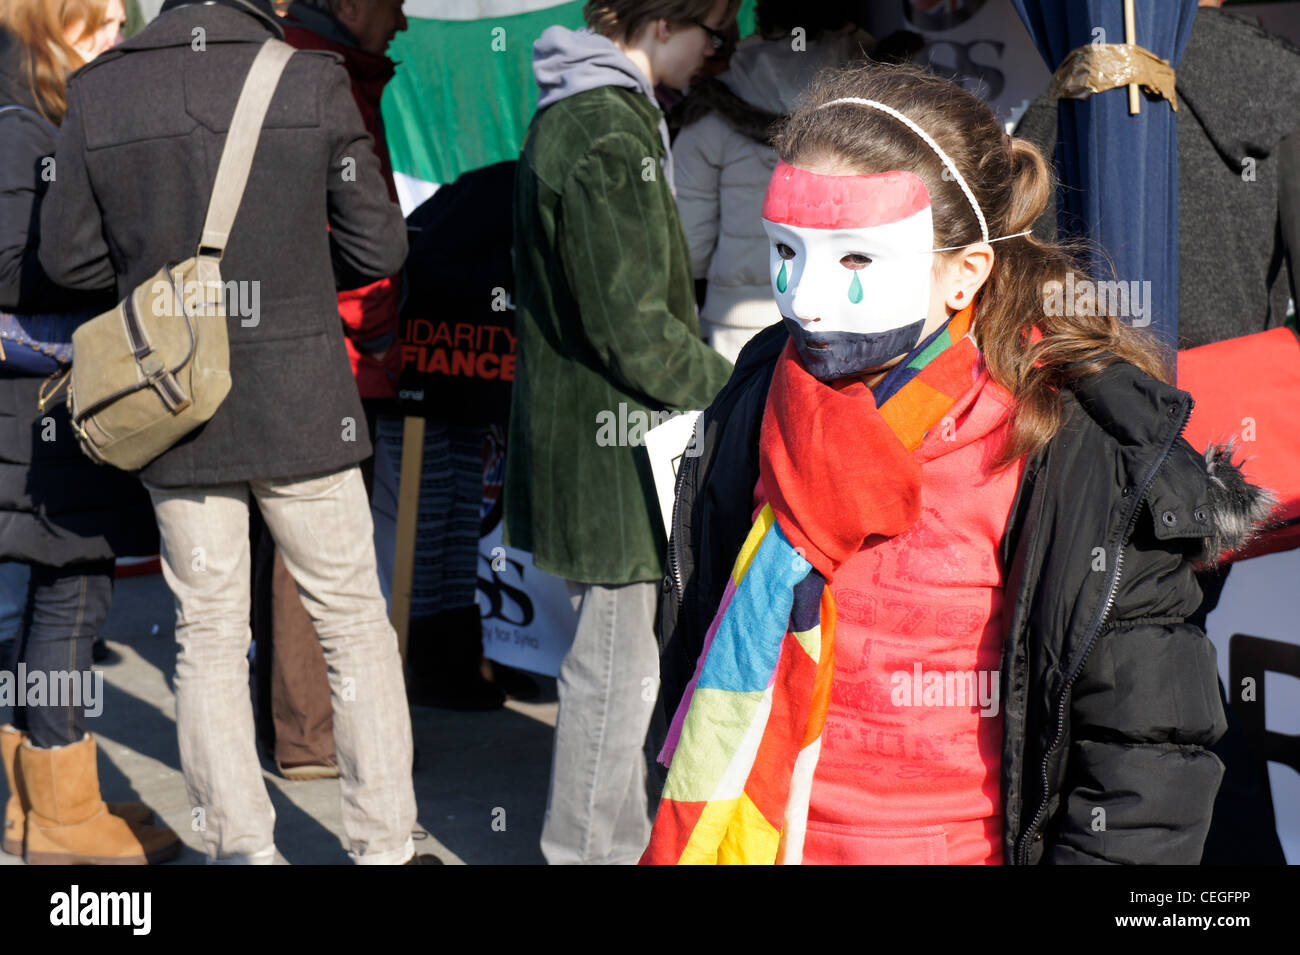 Ragazza giovane indossando maschera ad Amnesty International manifestazione a Londra a sostegno della primavera araba Foto Stock